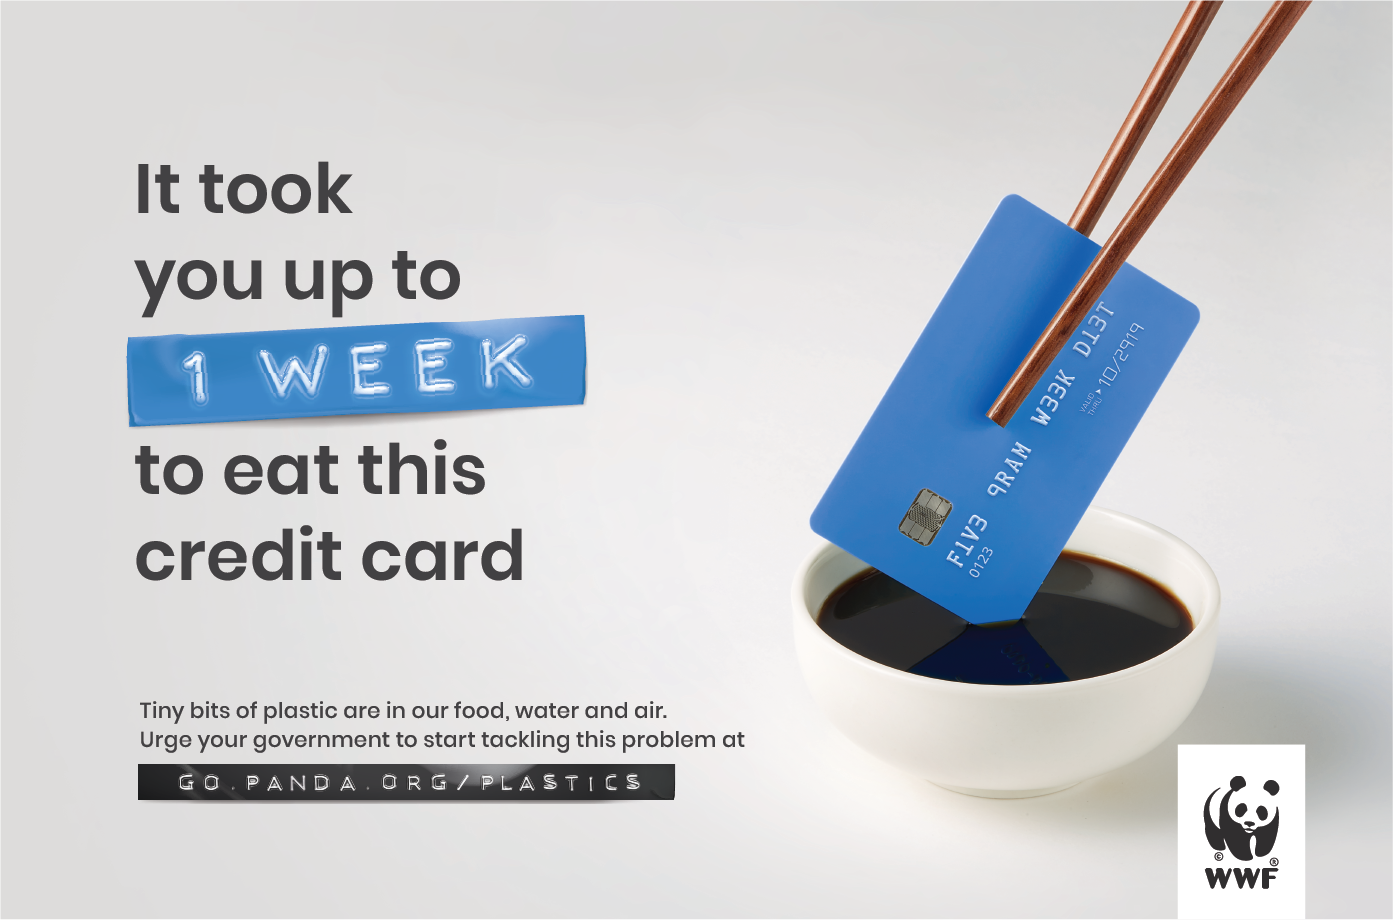 WWF upozorňuje: za týždeň príjmeme asi päť gramov mikroplastov. Je to akoby sme zjedli kreditnú kartu.